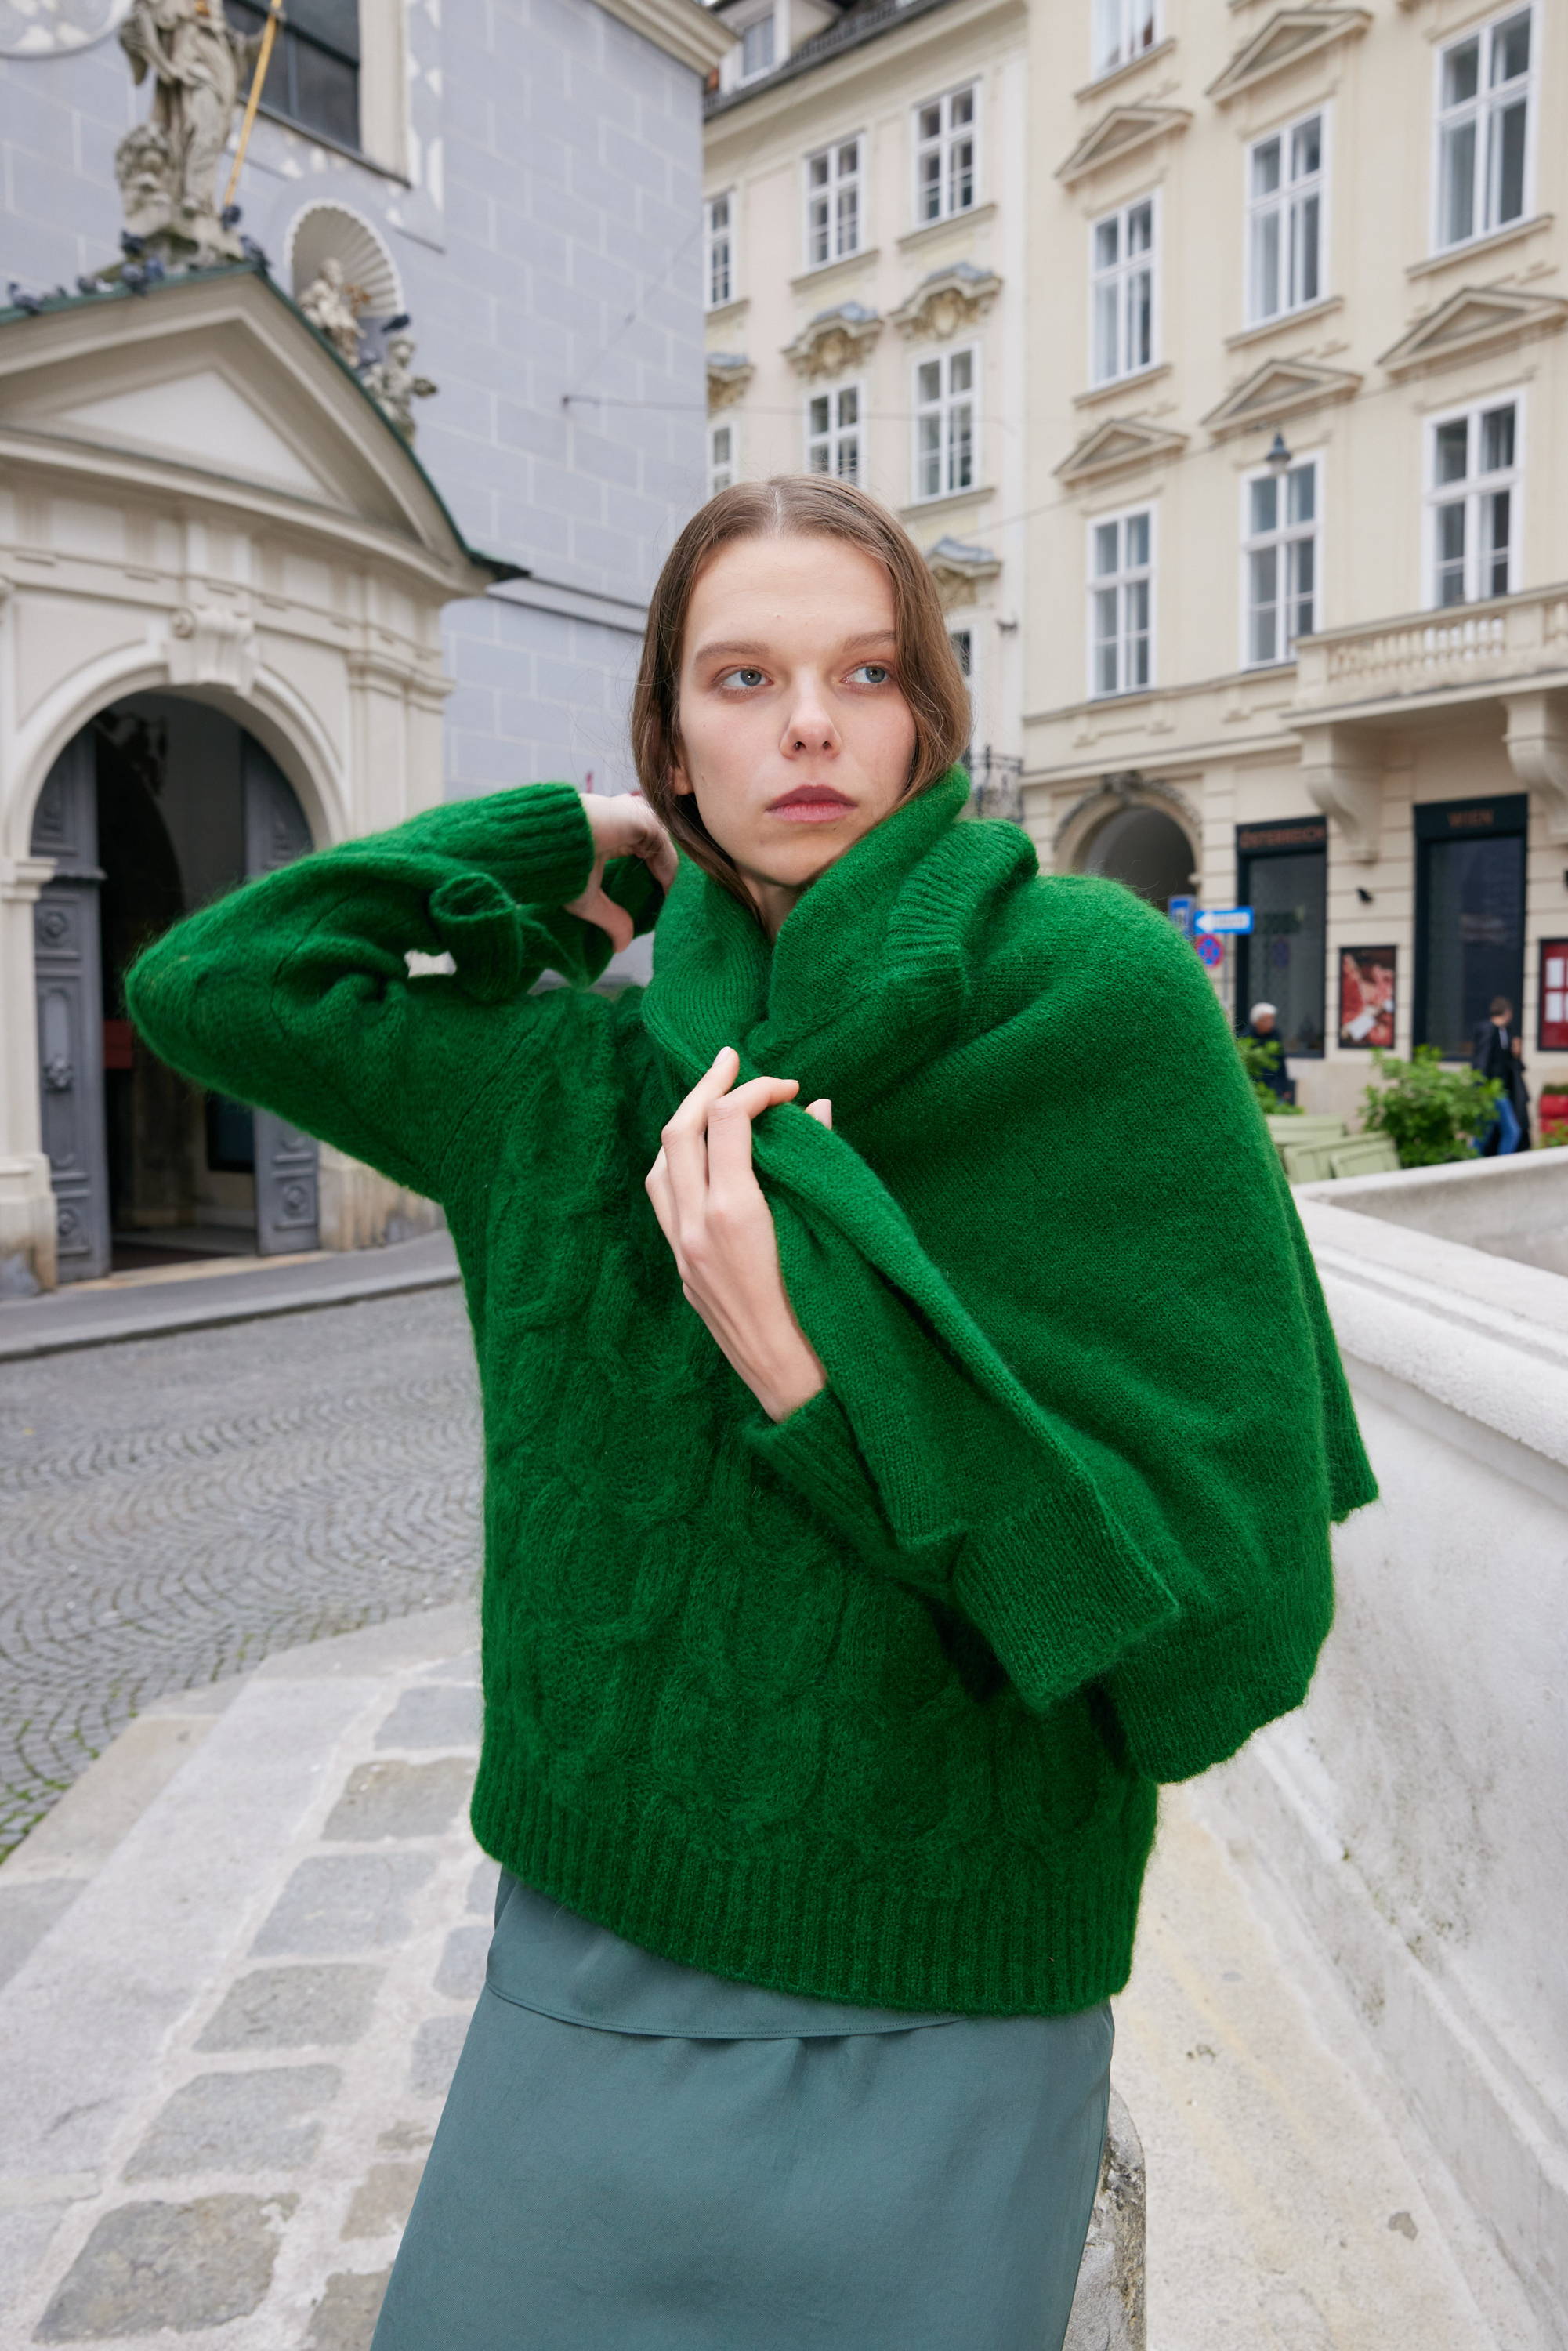 model wearing sweater on the street